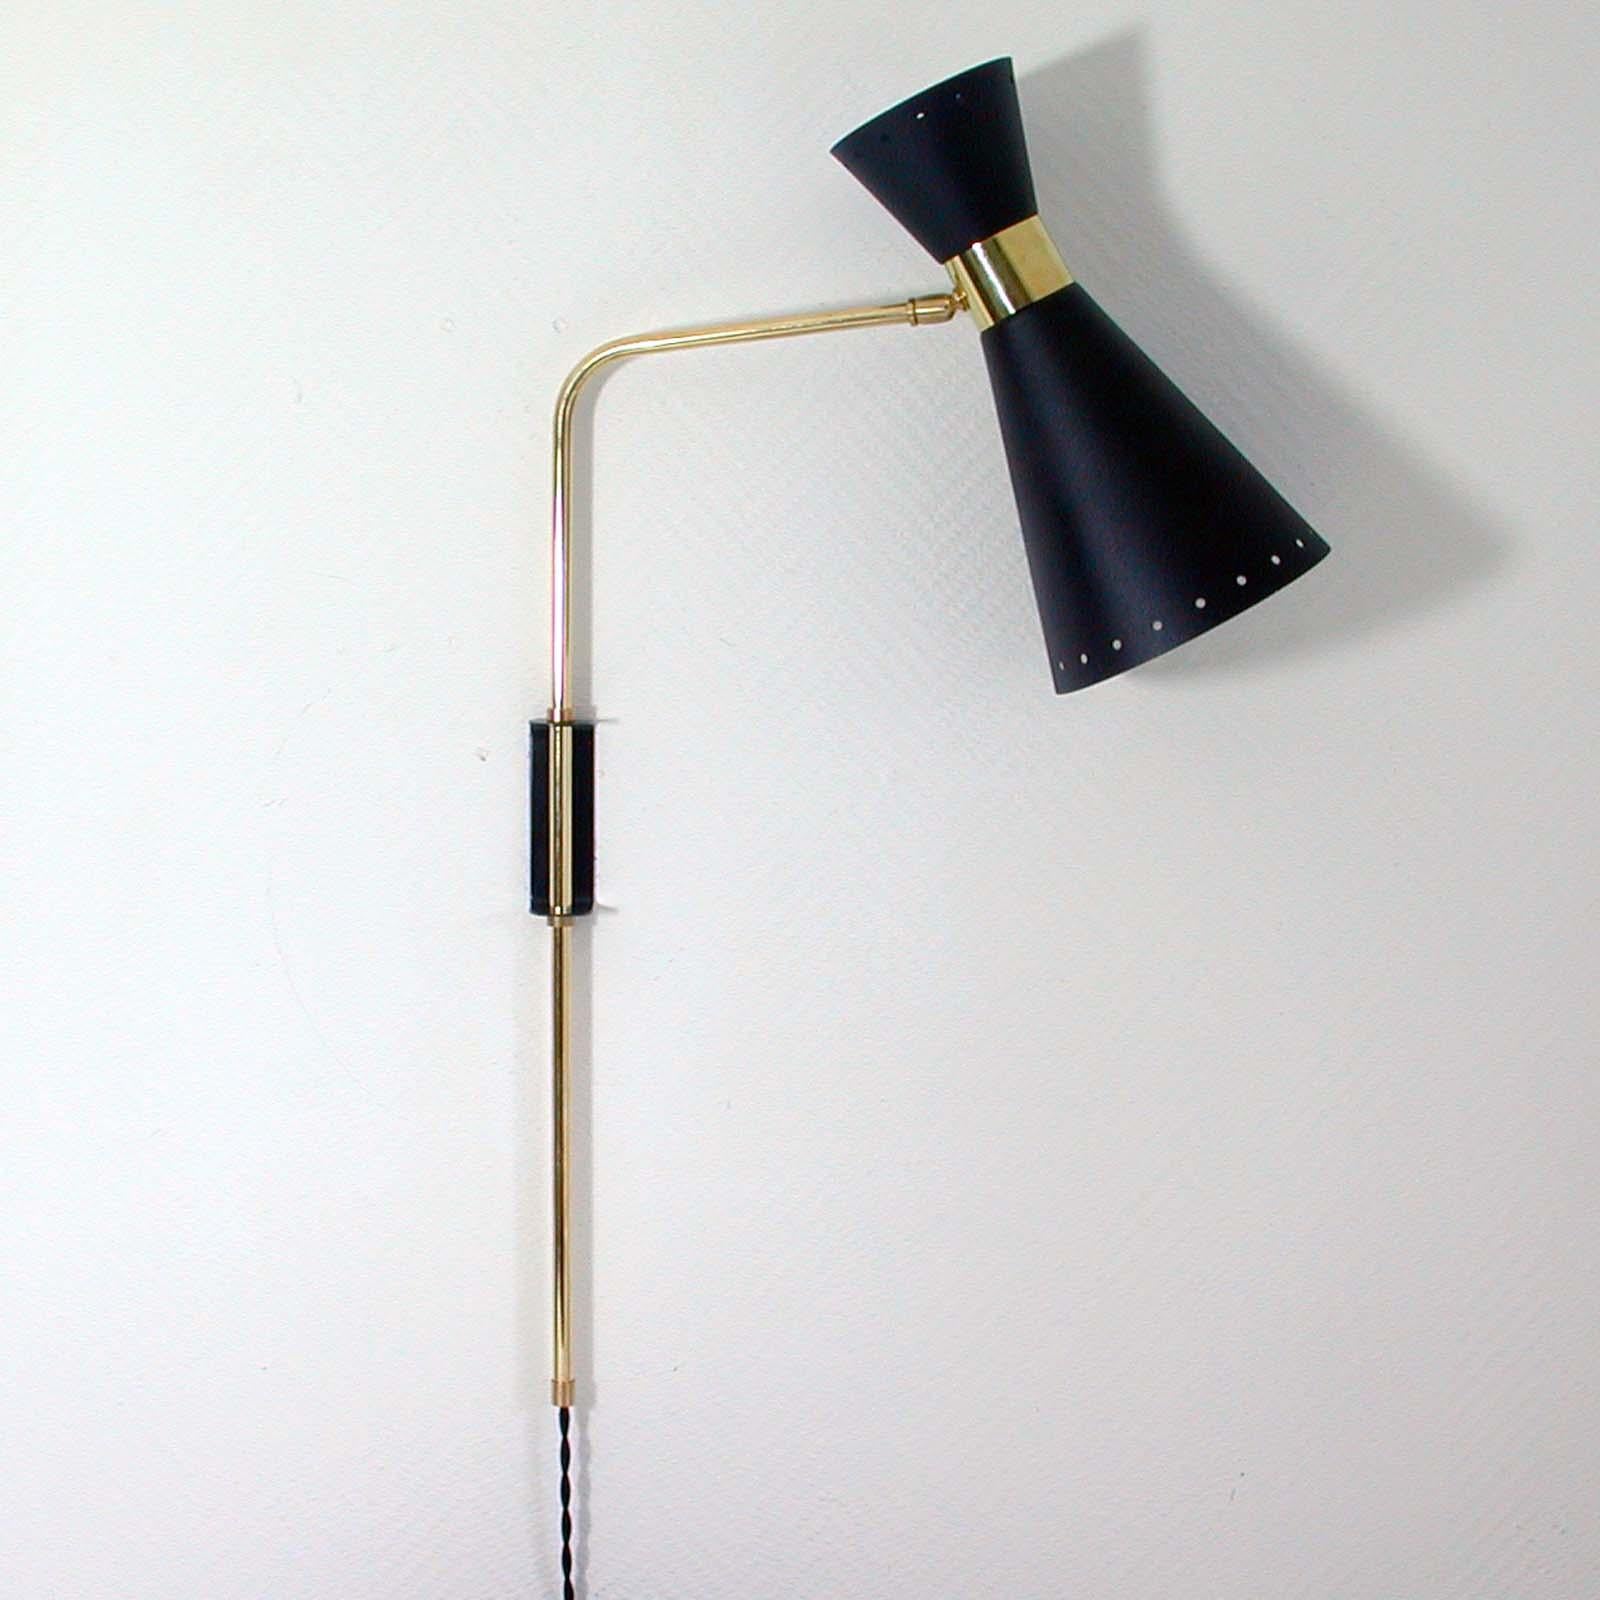 Cette superbe applique articulée de style Pierre Guariche avec abat-jour réglable et bras de lampe réglable en hauteur a été fabriquée en France dans les années 1950. La lampe est dotée d'un abat-jour en métal laqué noir avec des détails en laiton.